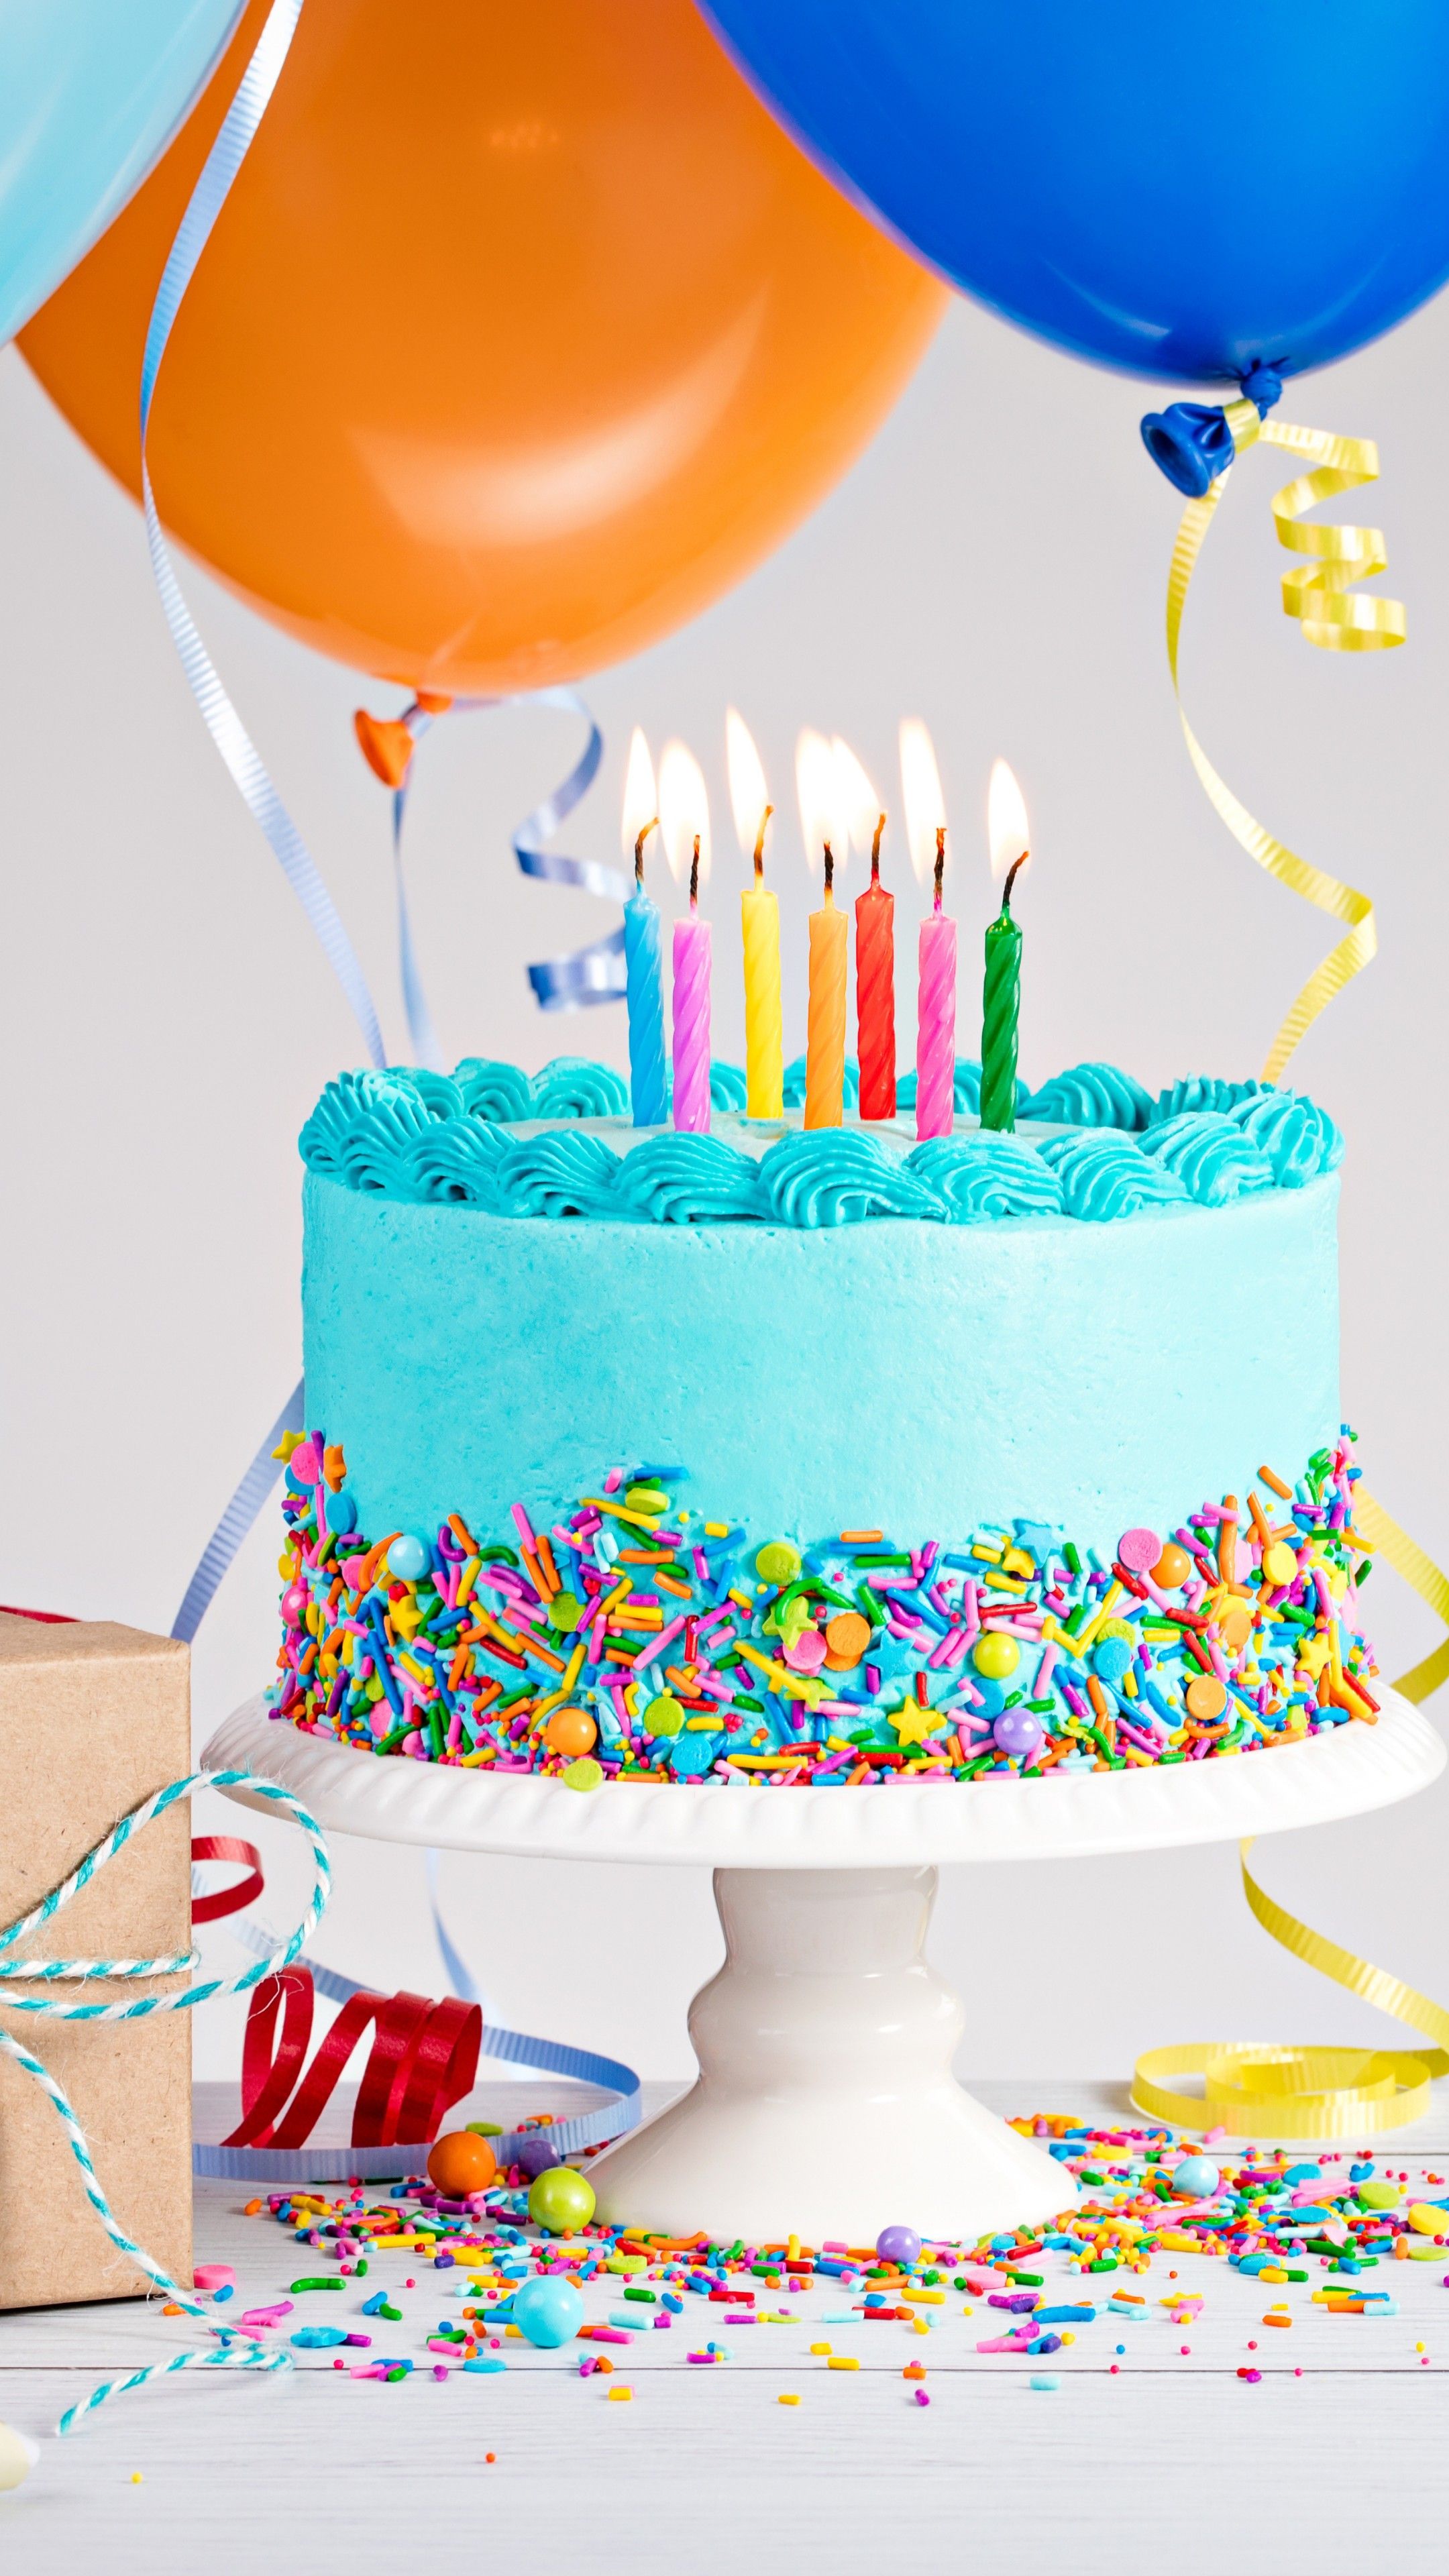 عکس استوک کیک جشن تولد به رنگ آبی دلپذیر با تزئین رنگی